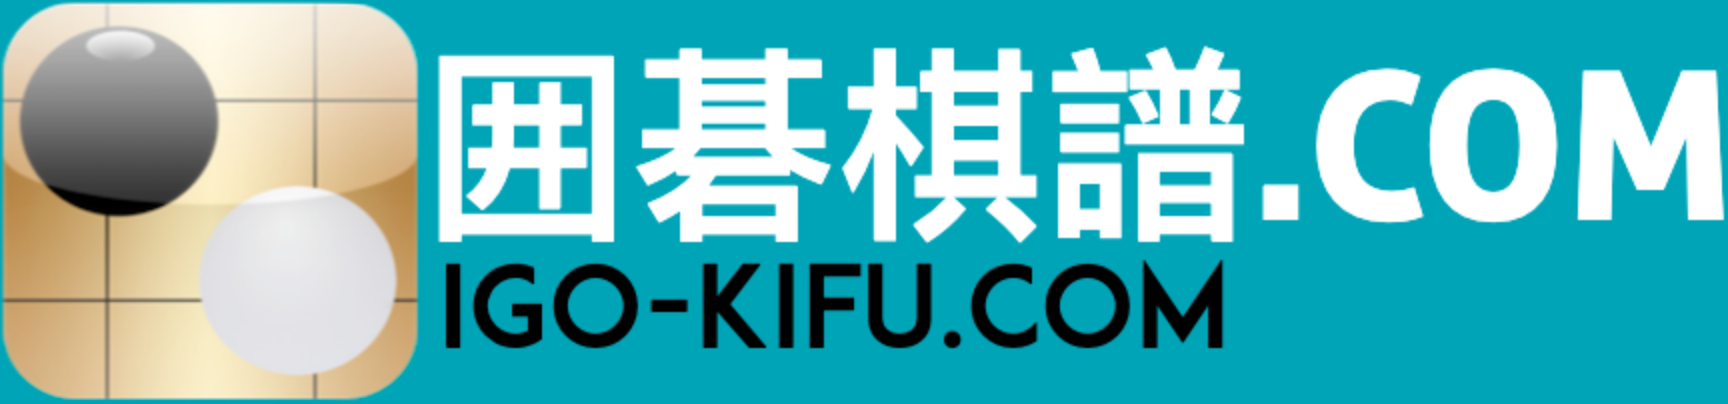 igo-kifu.com